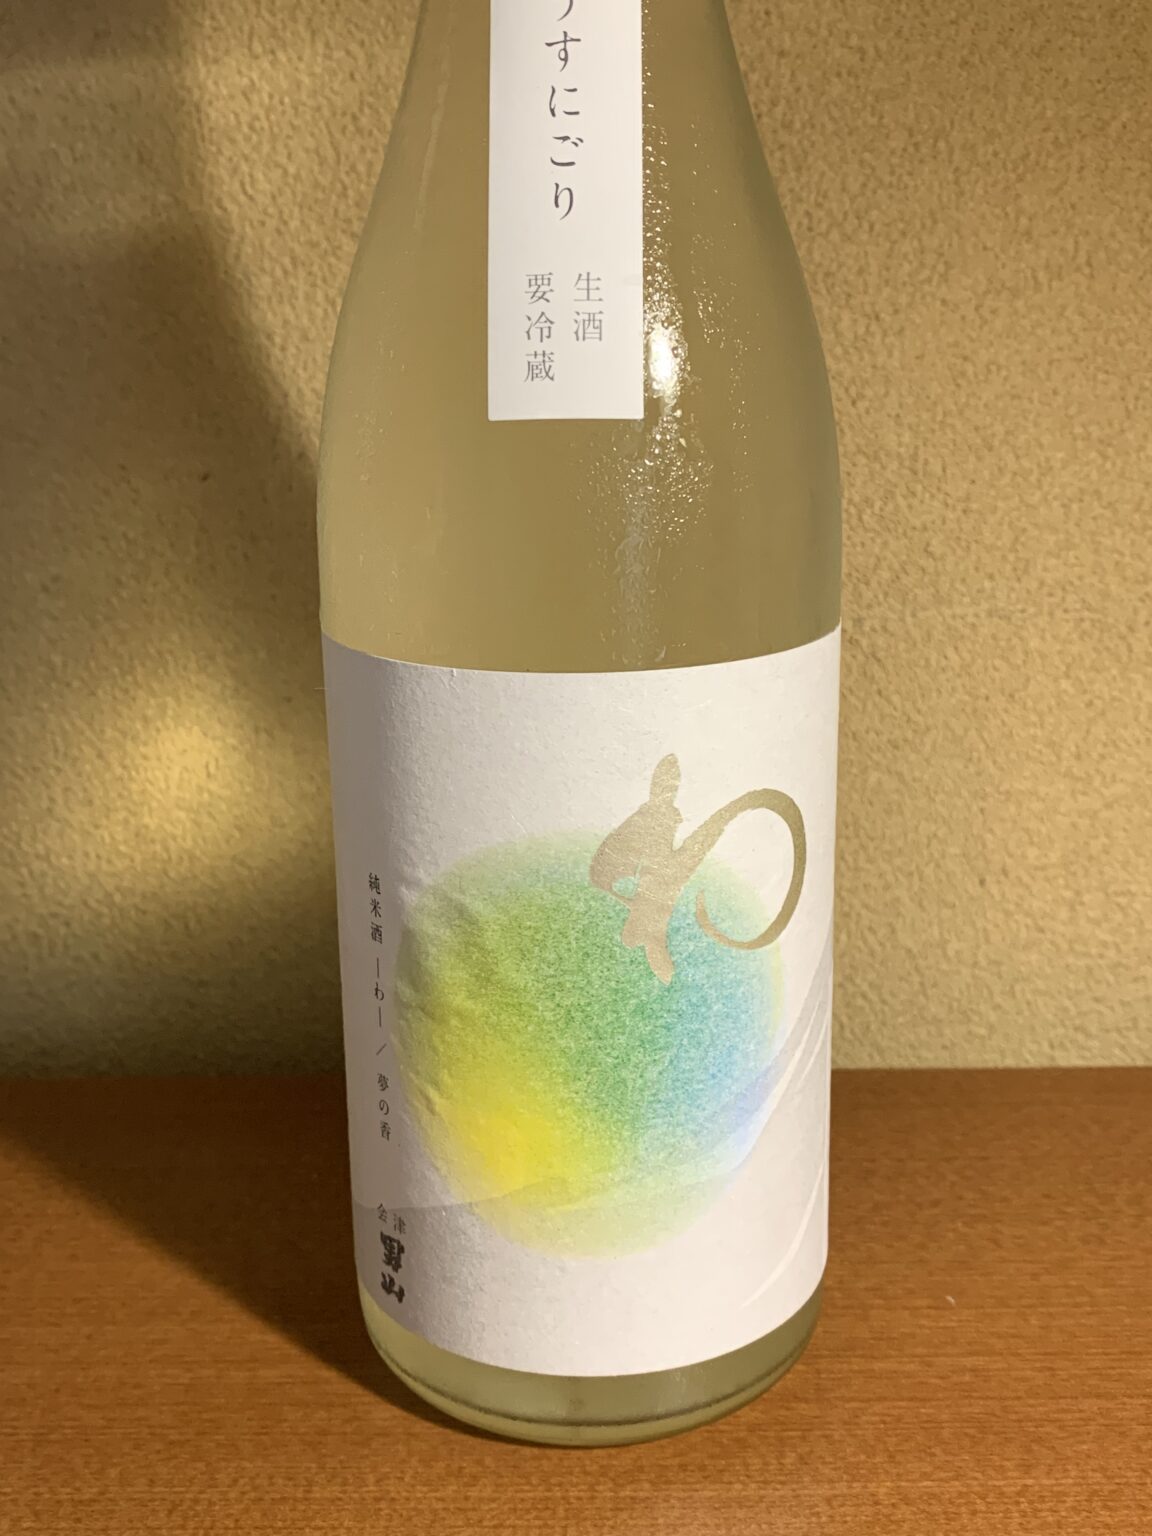 20年ぶりに復活した会津の日本酒『会津男山-わ-』は芳醇な香りと心地よい甘さ